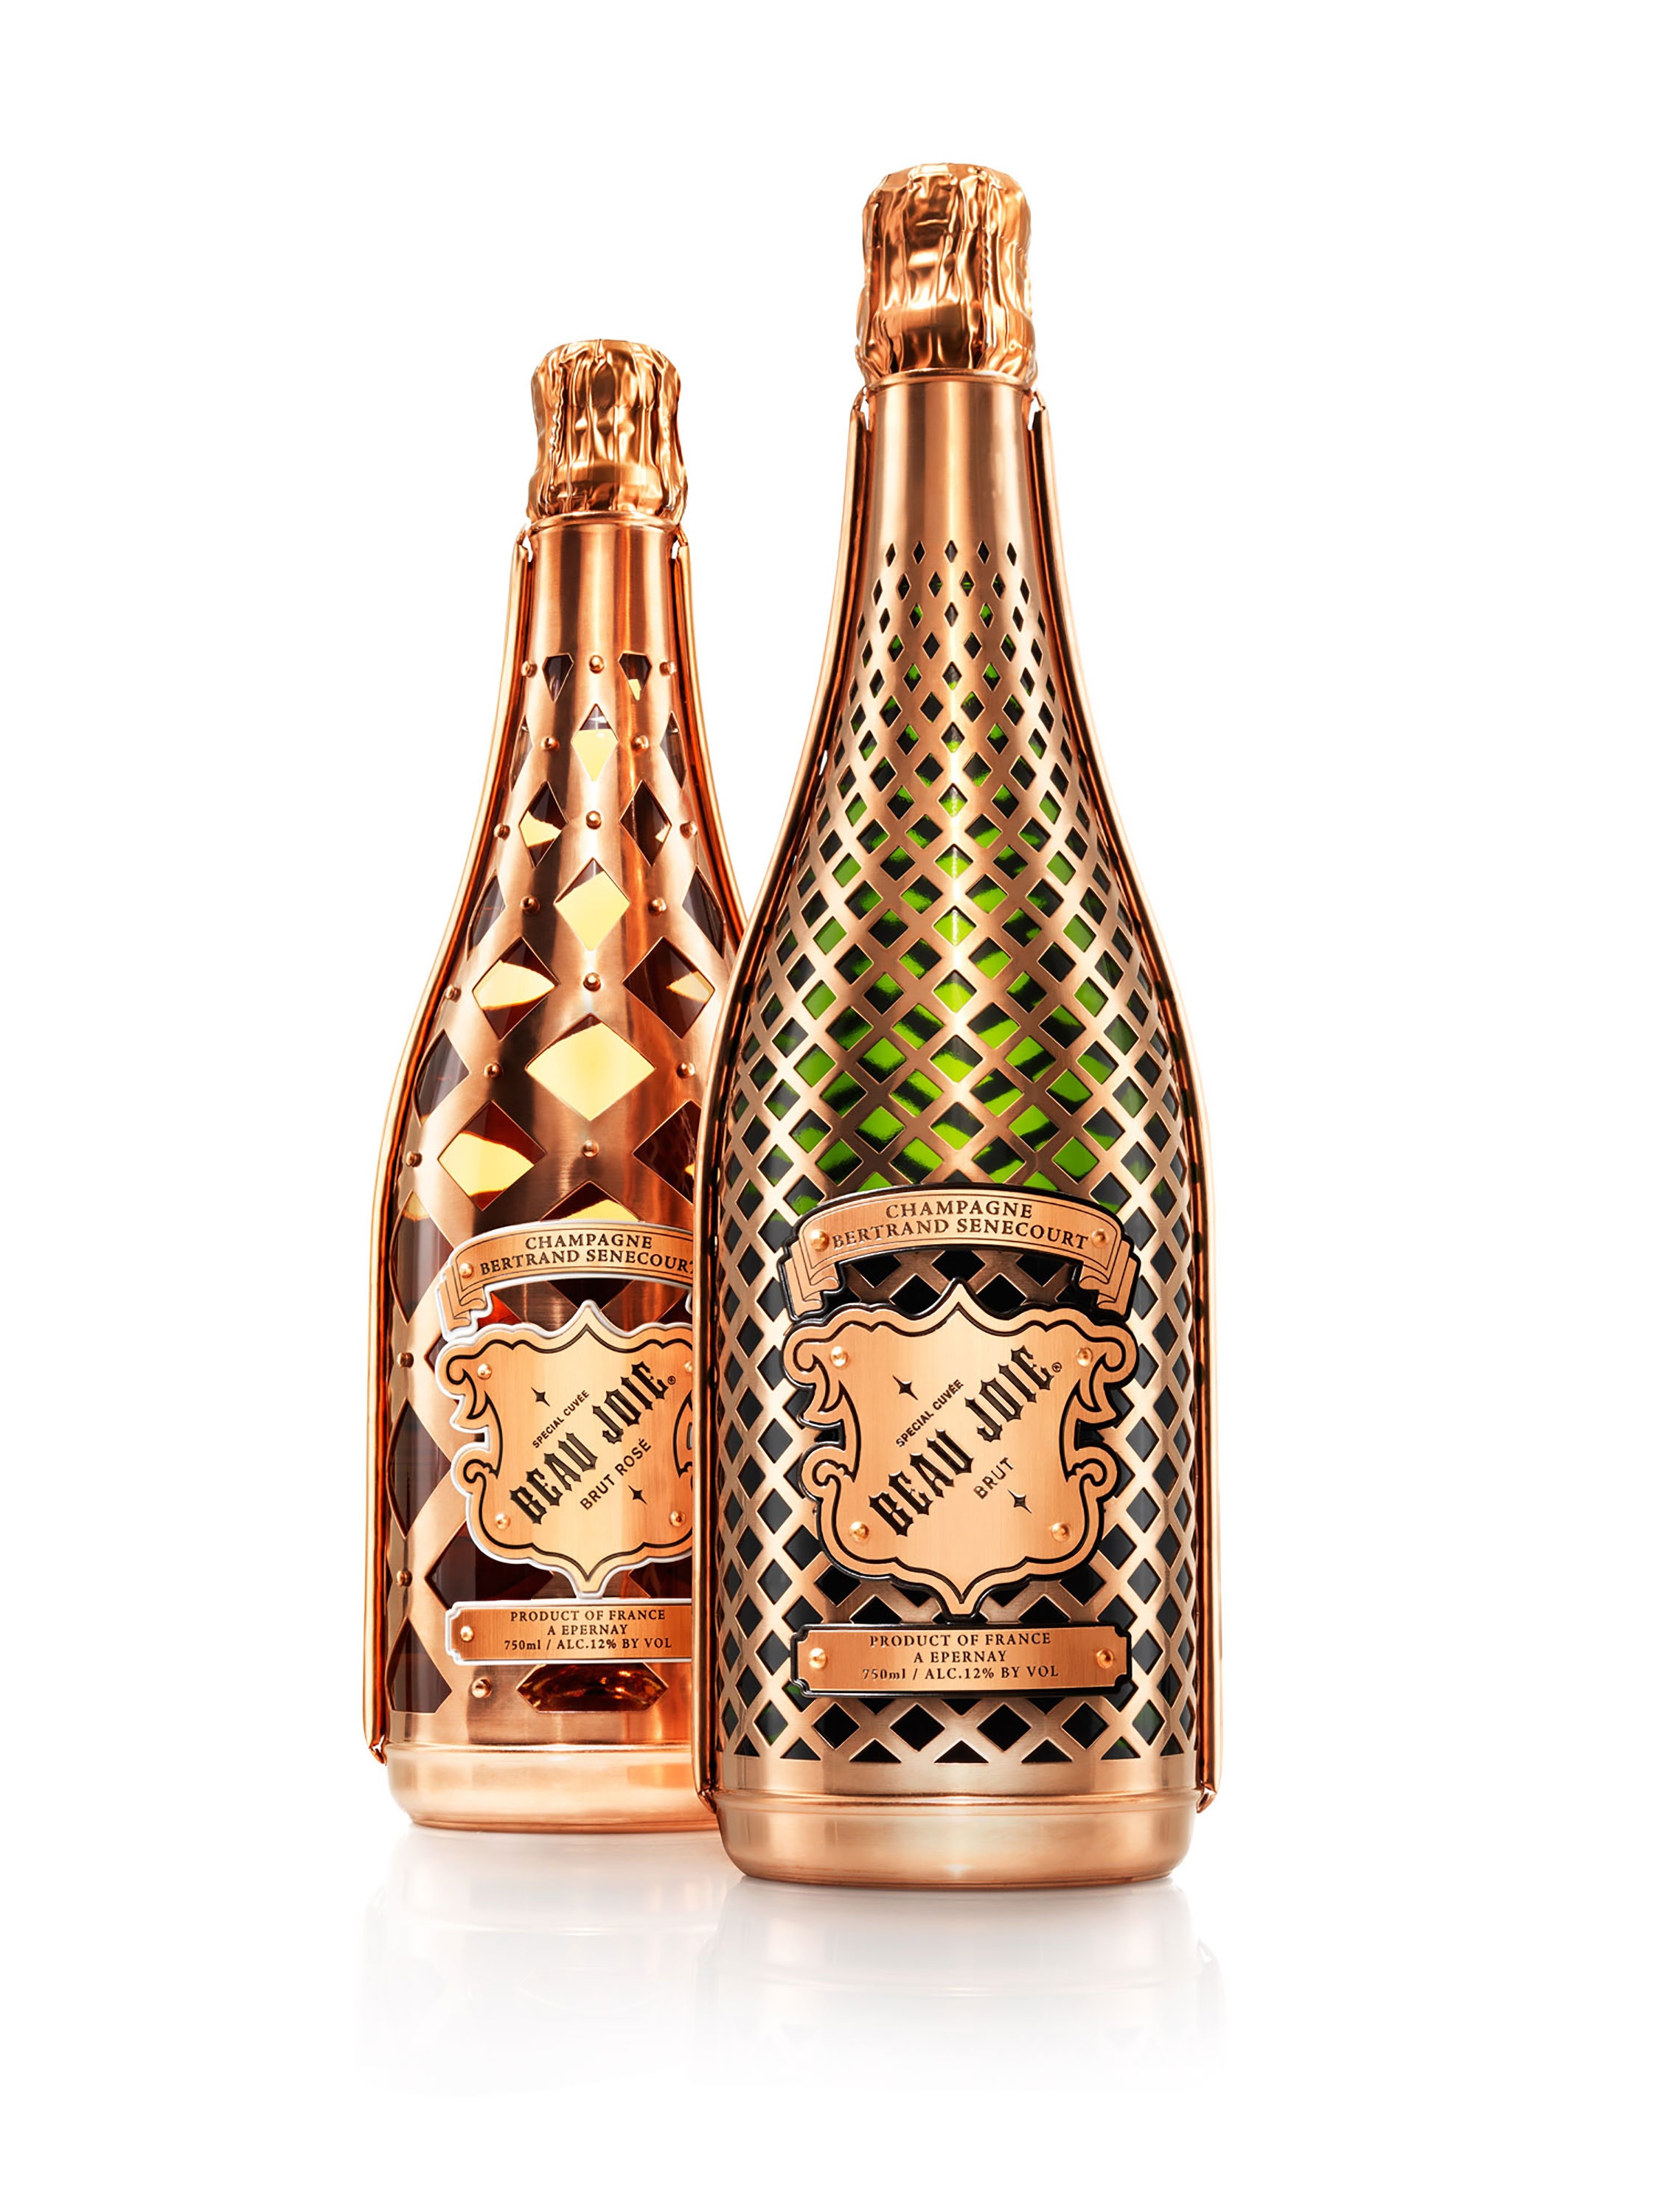 Detail Images Of Champagne Bottles Nomer 16